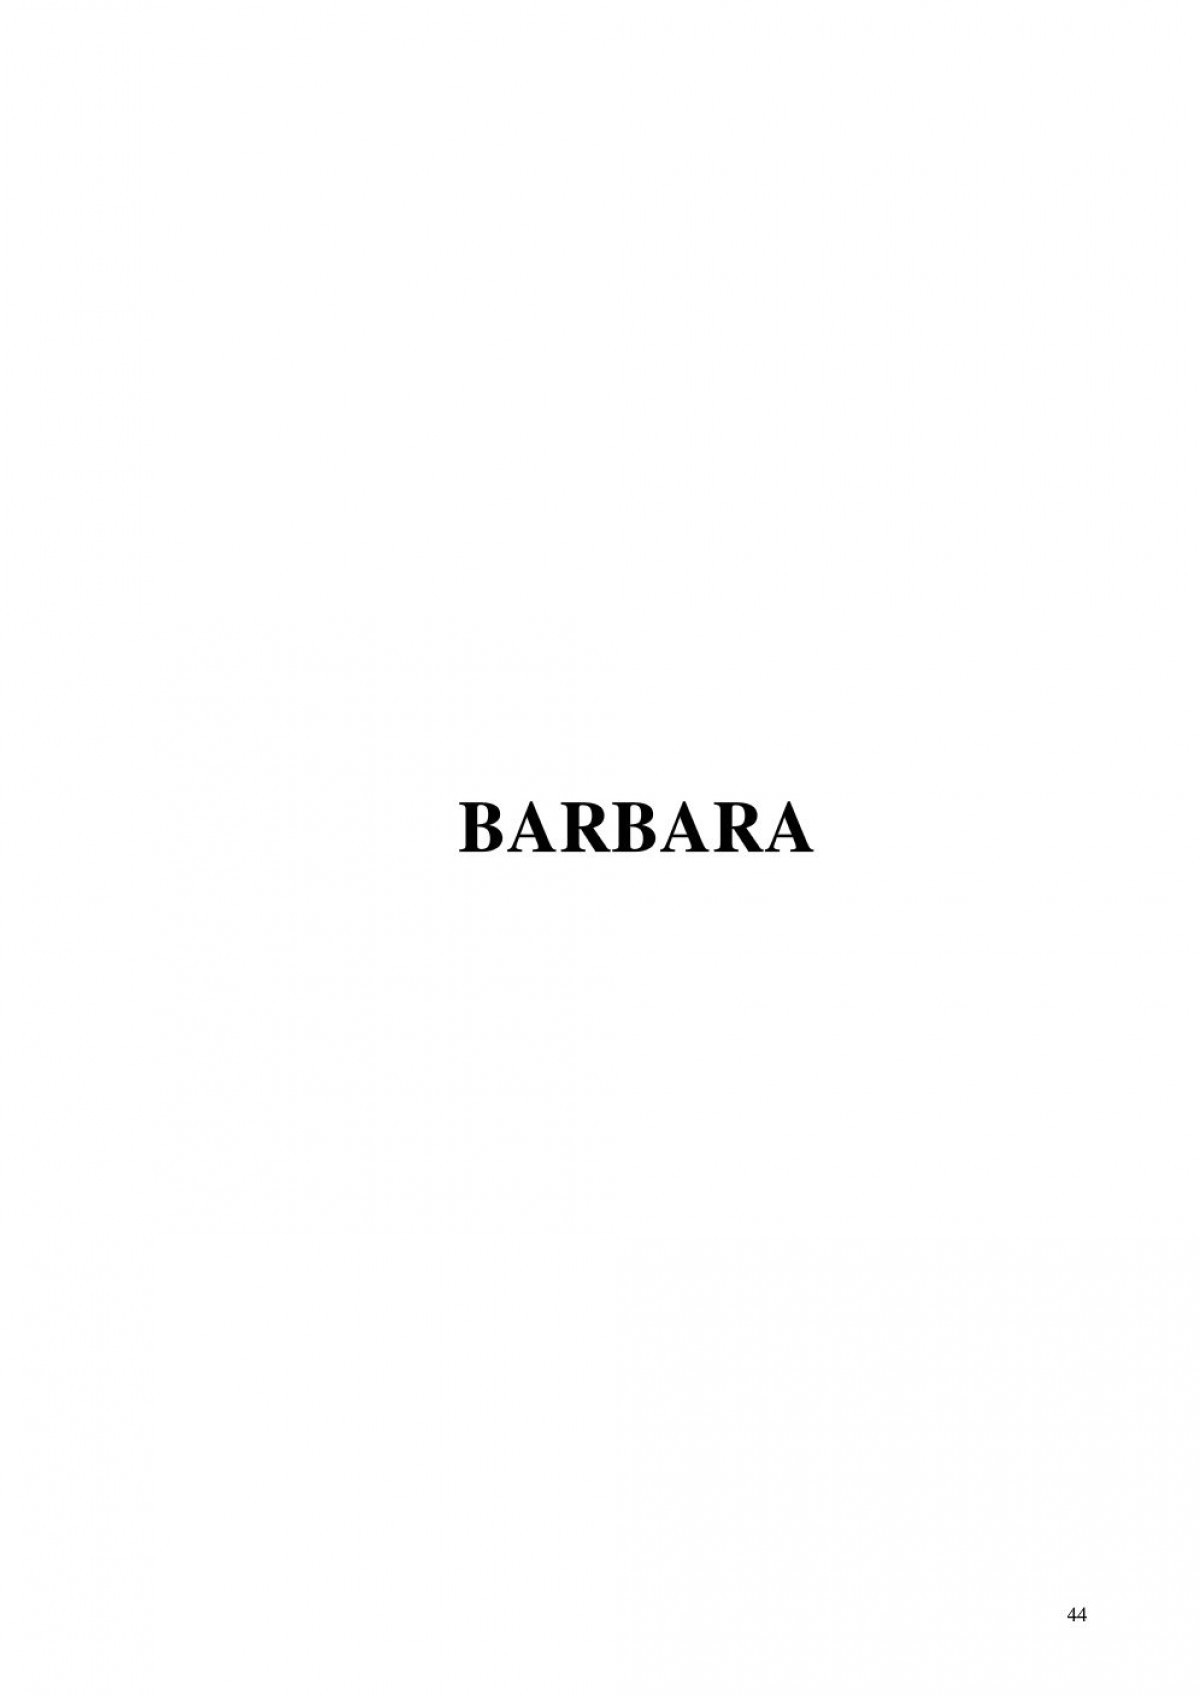 Les quatre jeudis suivi de Barbara numero d'image 45